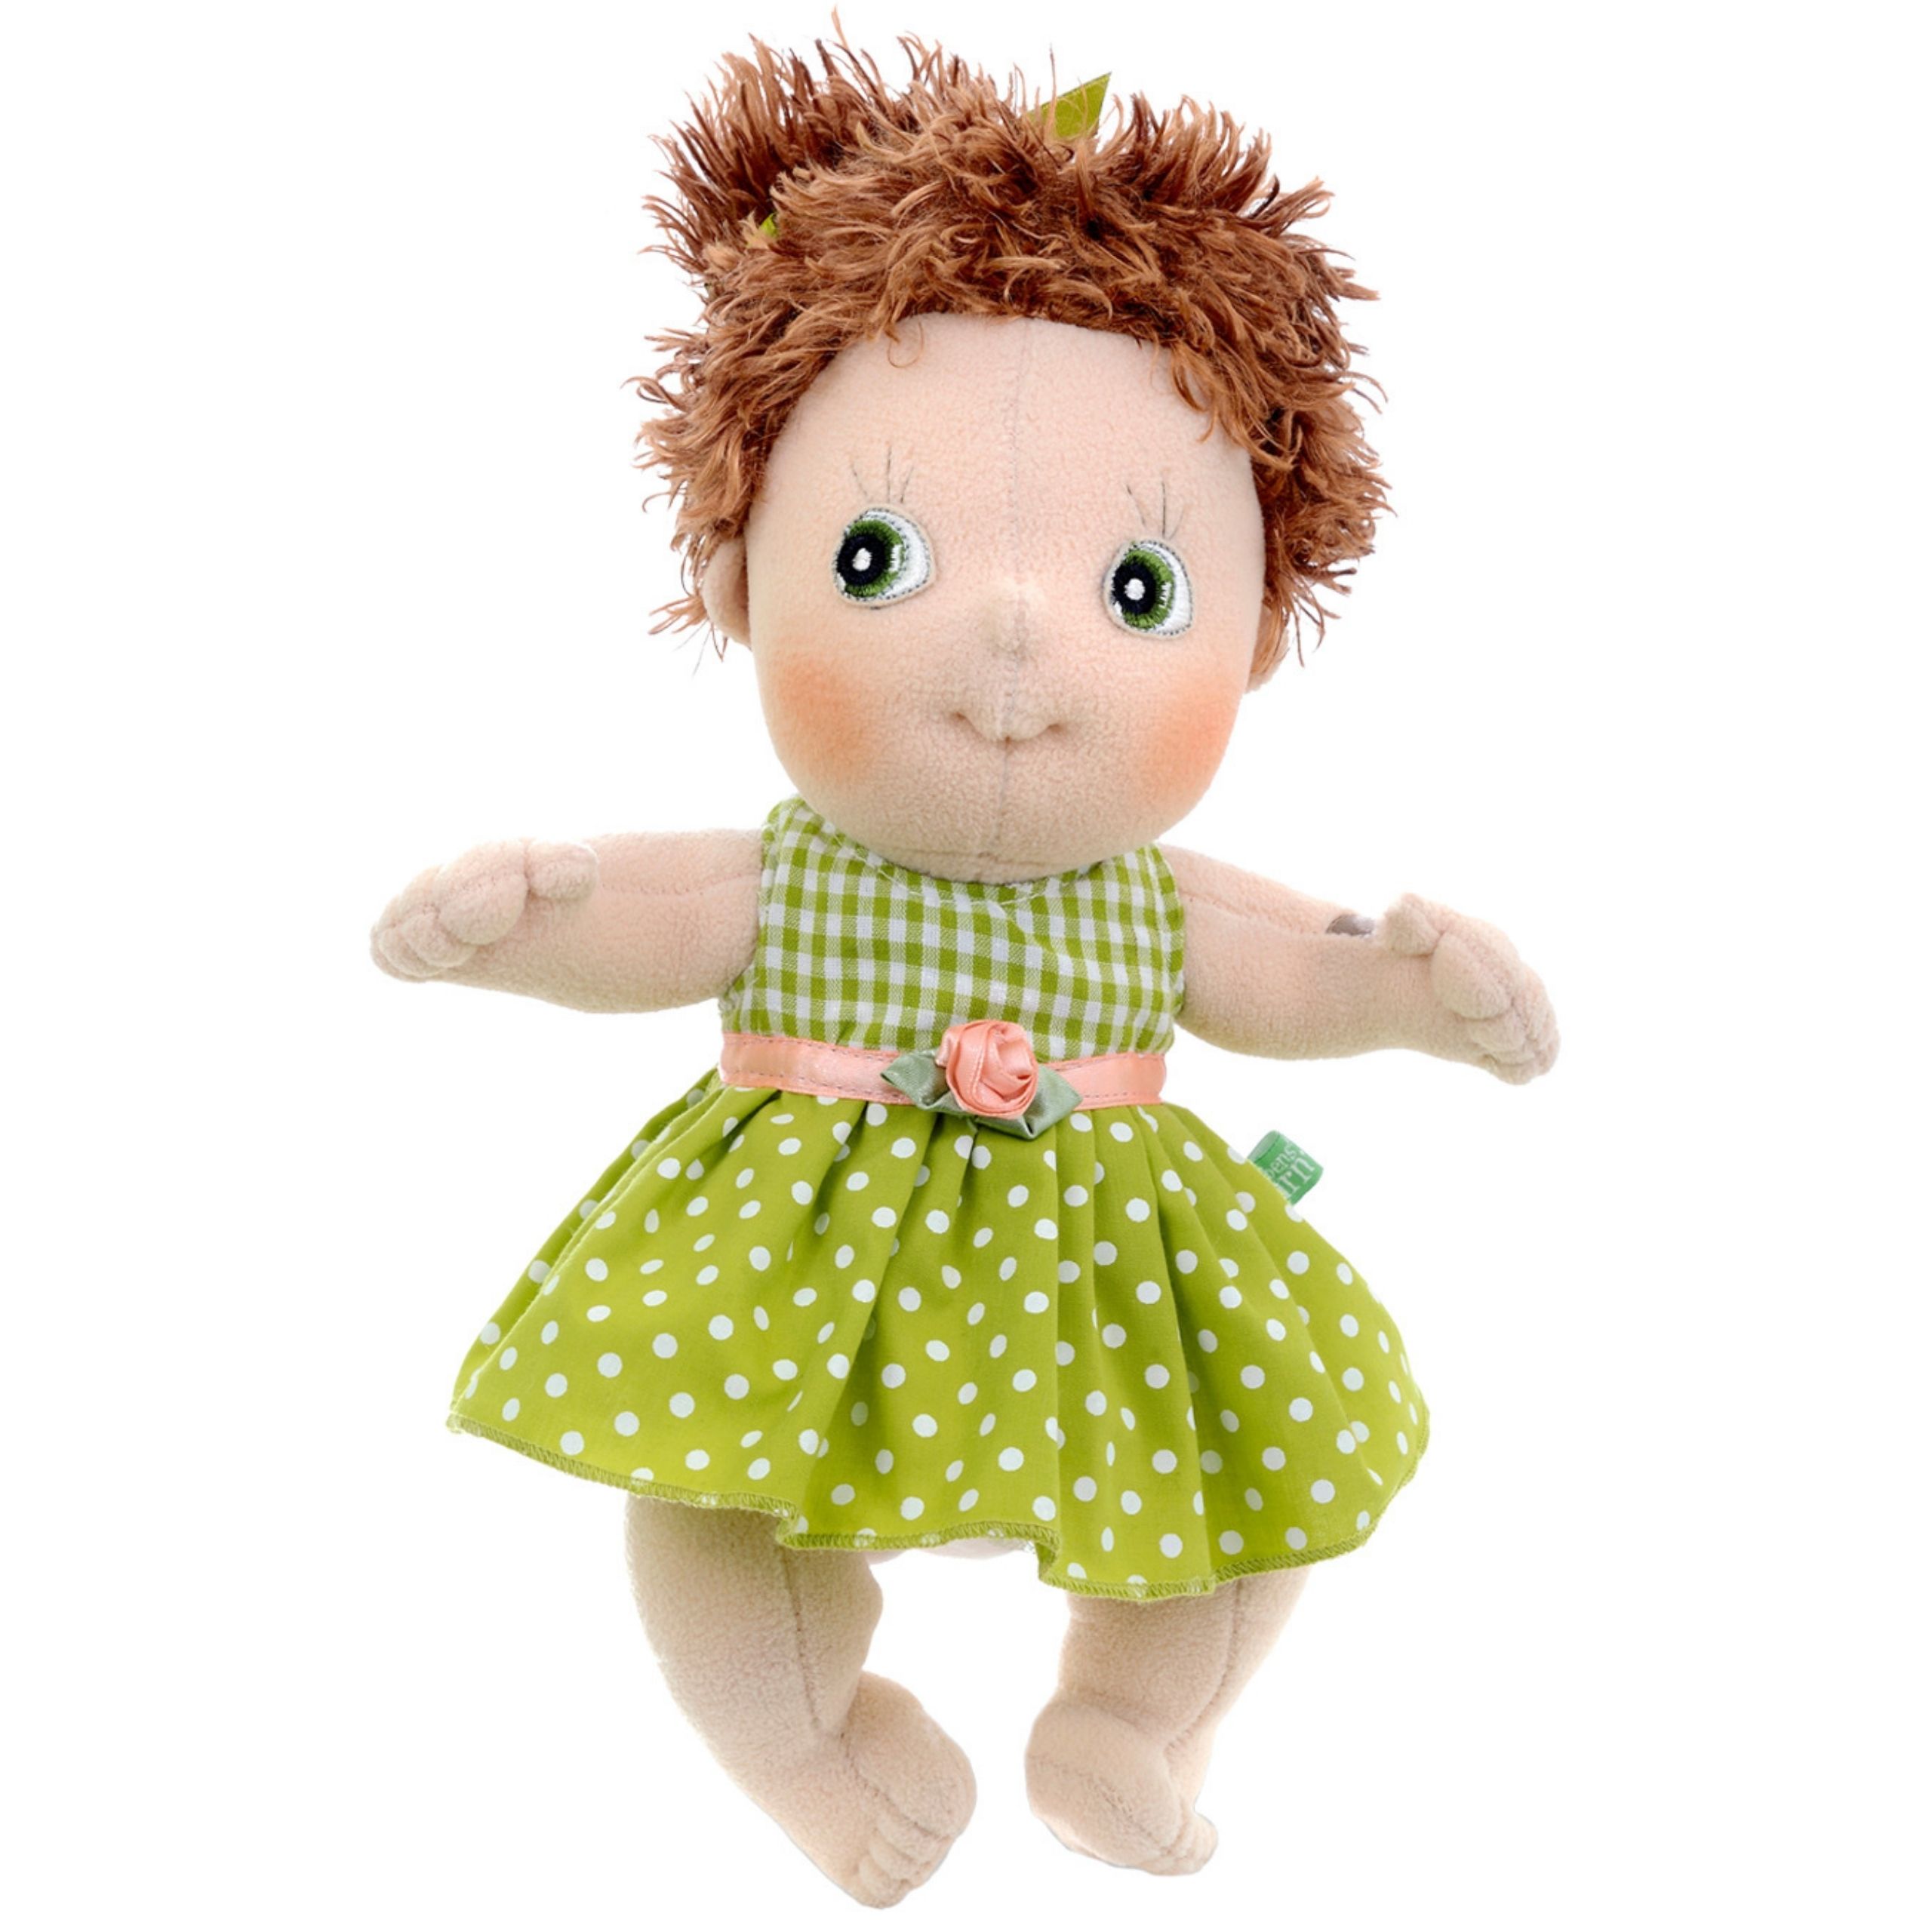 Dolls rubens barn soft doll karin	cutie classic